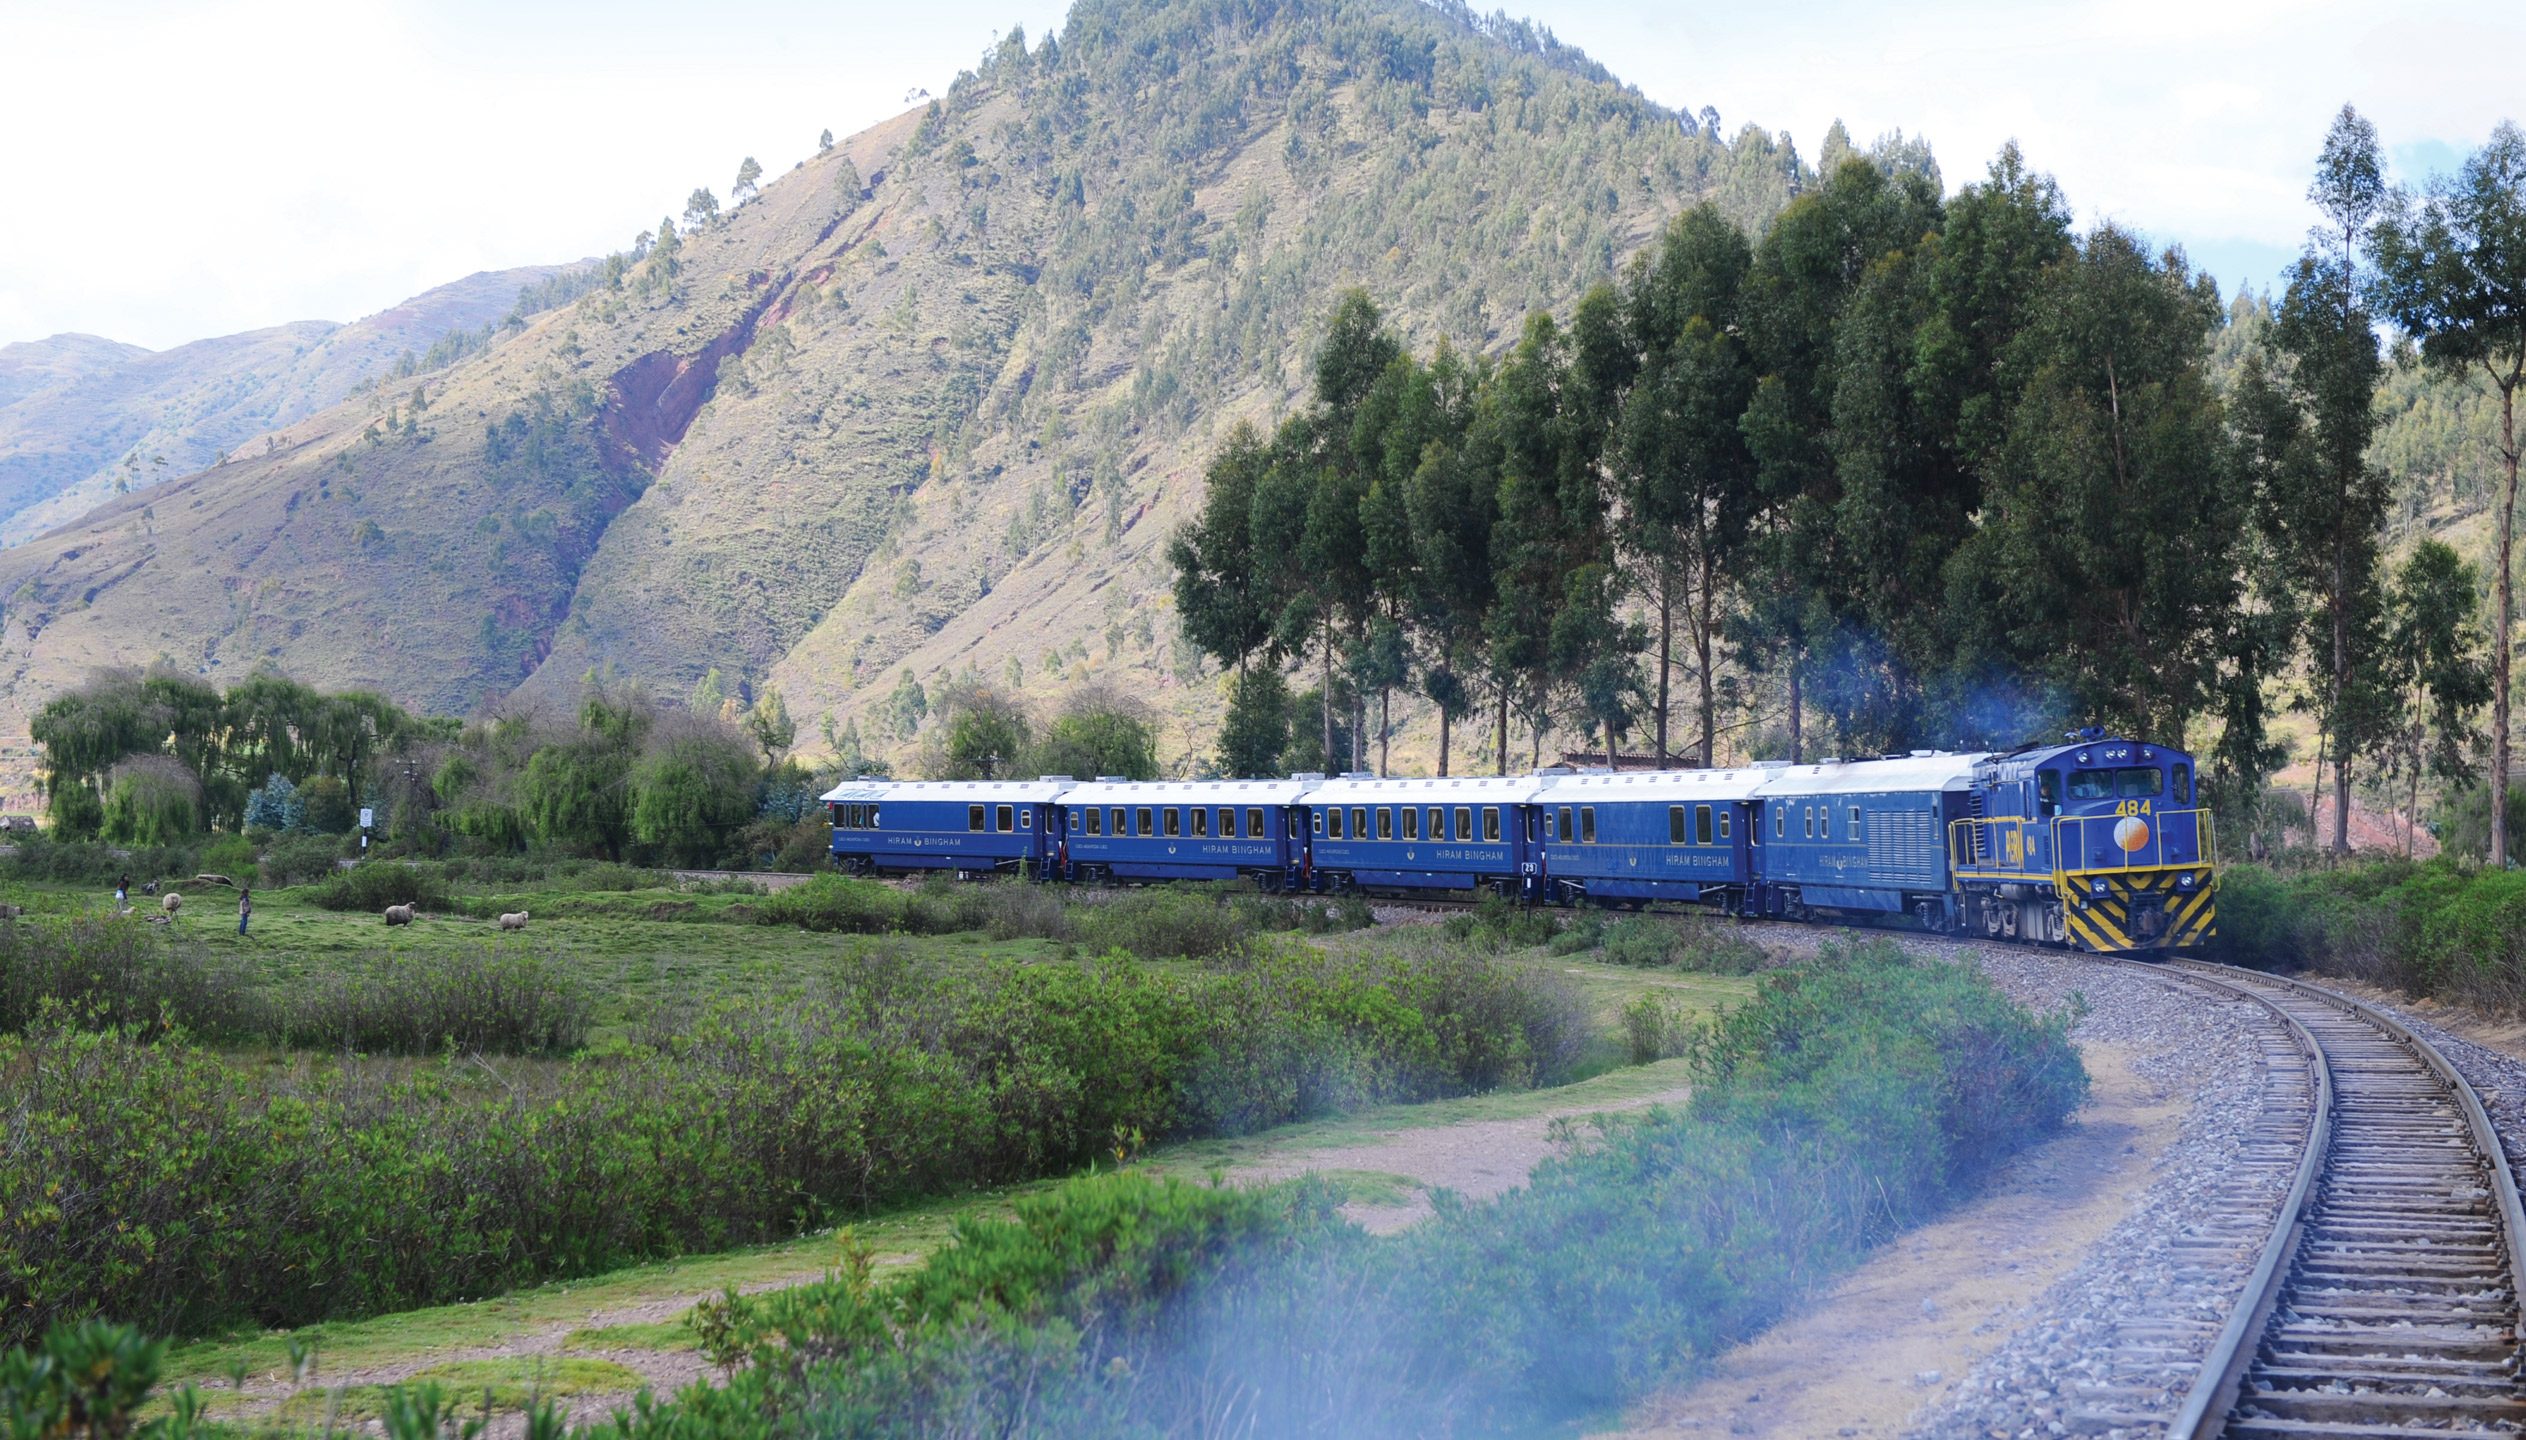 Hiram Bingham, A Belmond Train, Machu Picchu